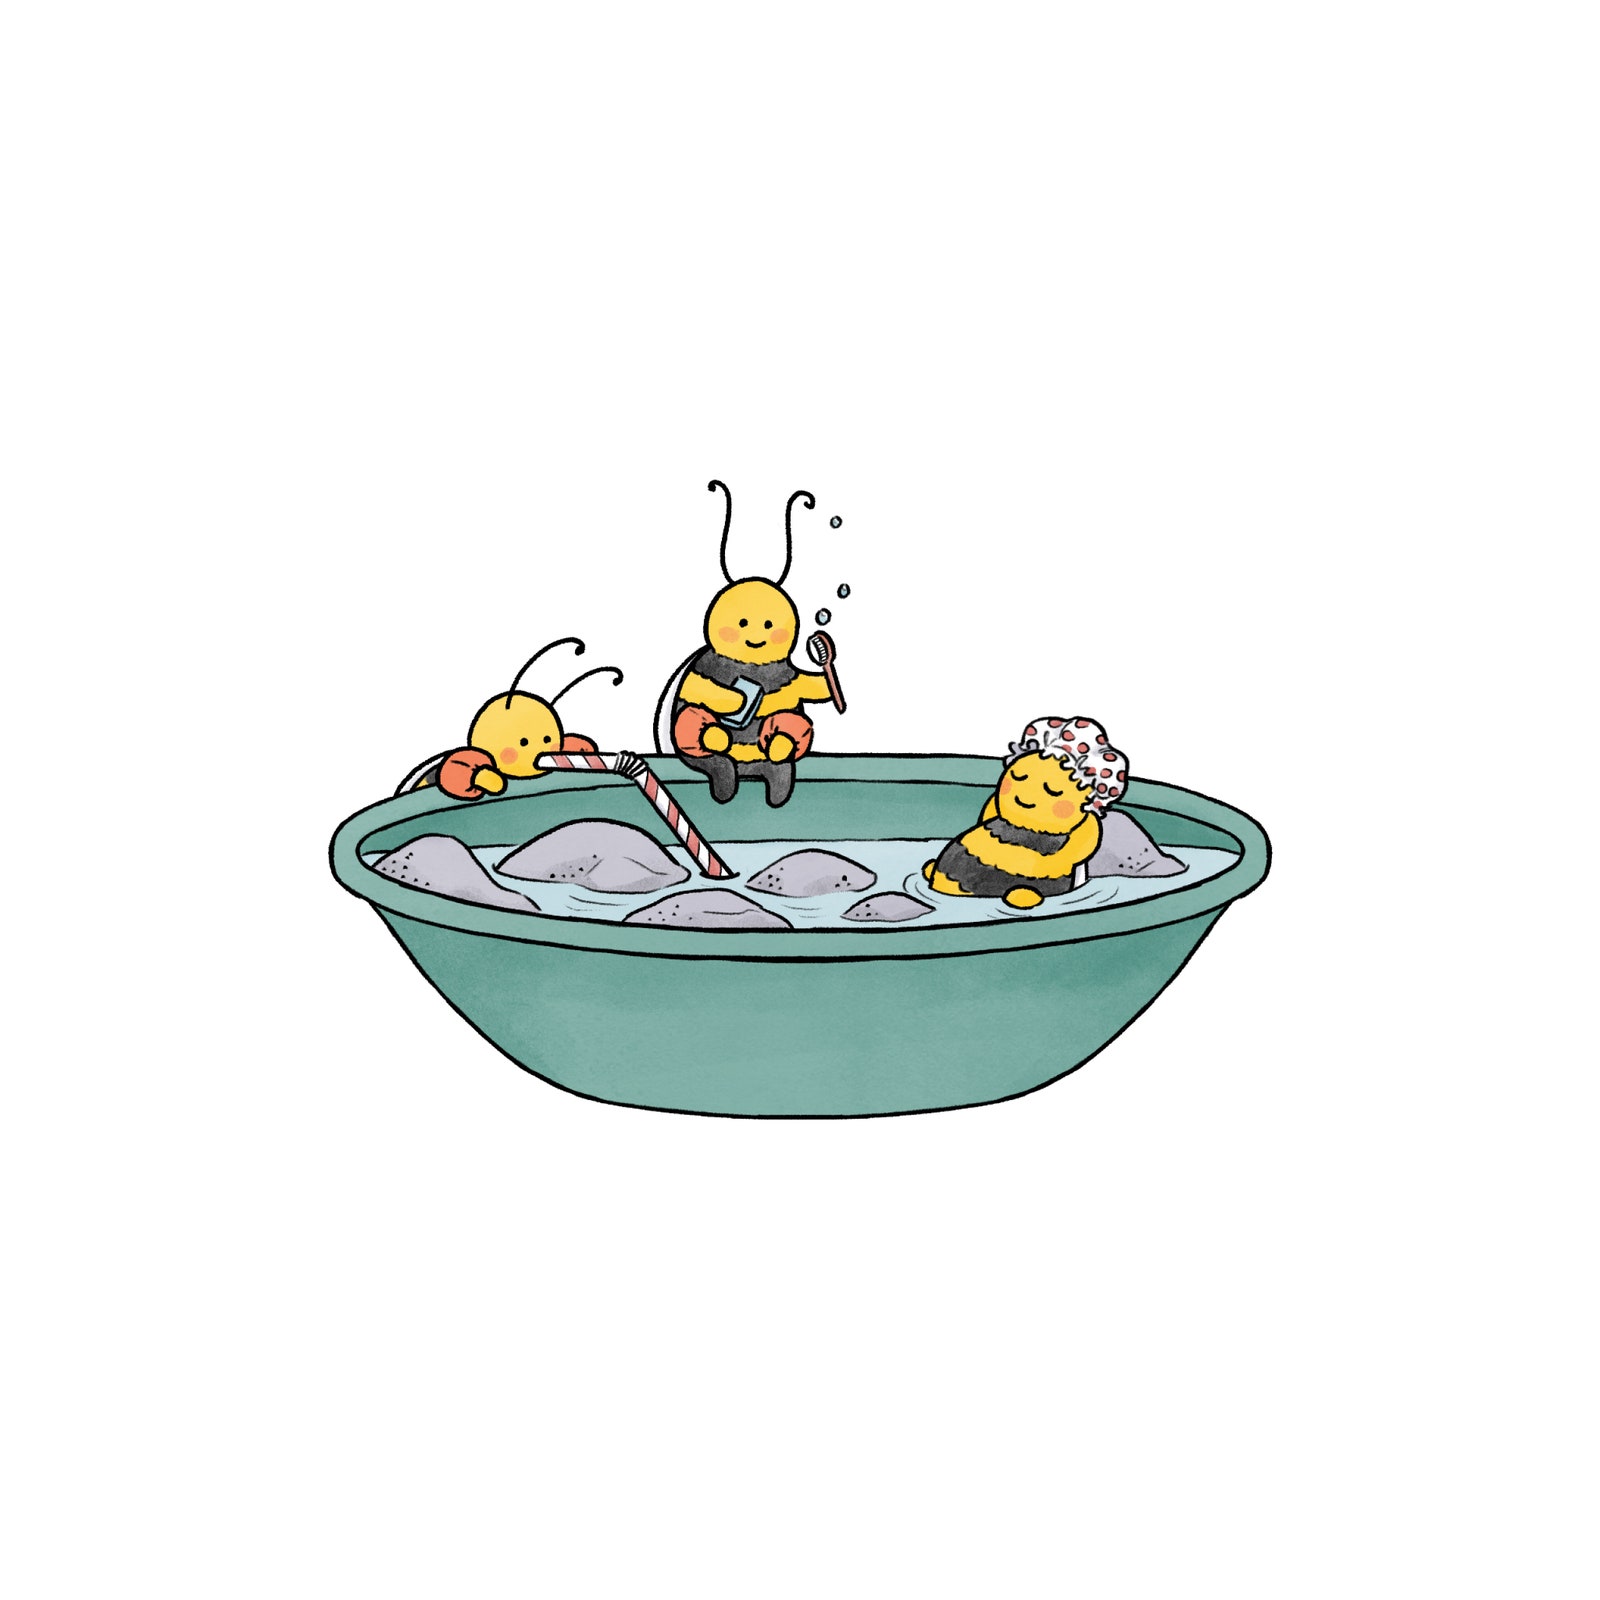 Bienen baden in einer Schüssel.